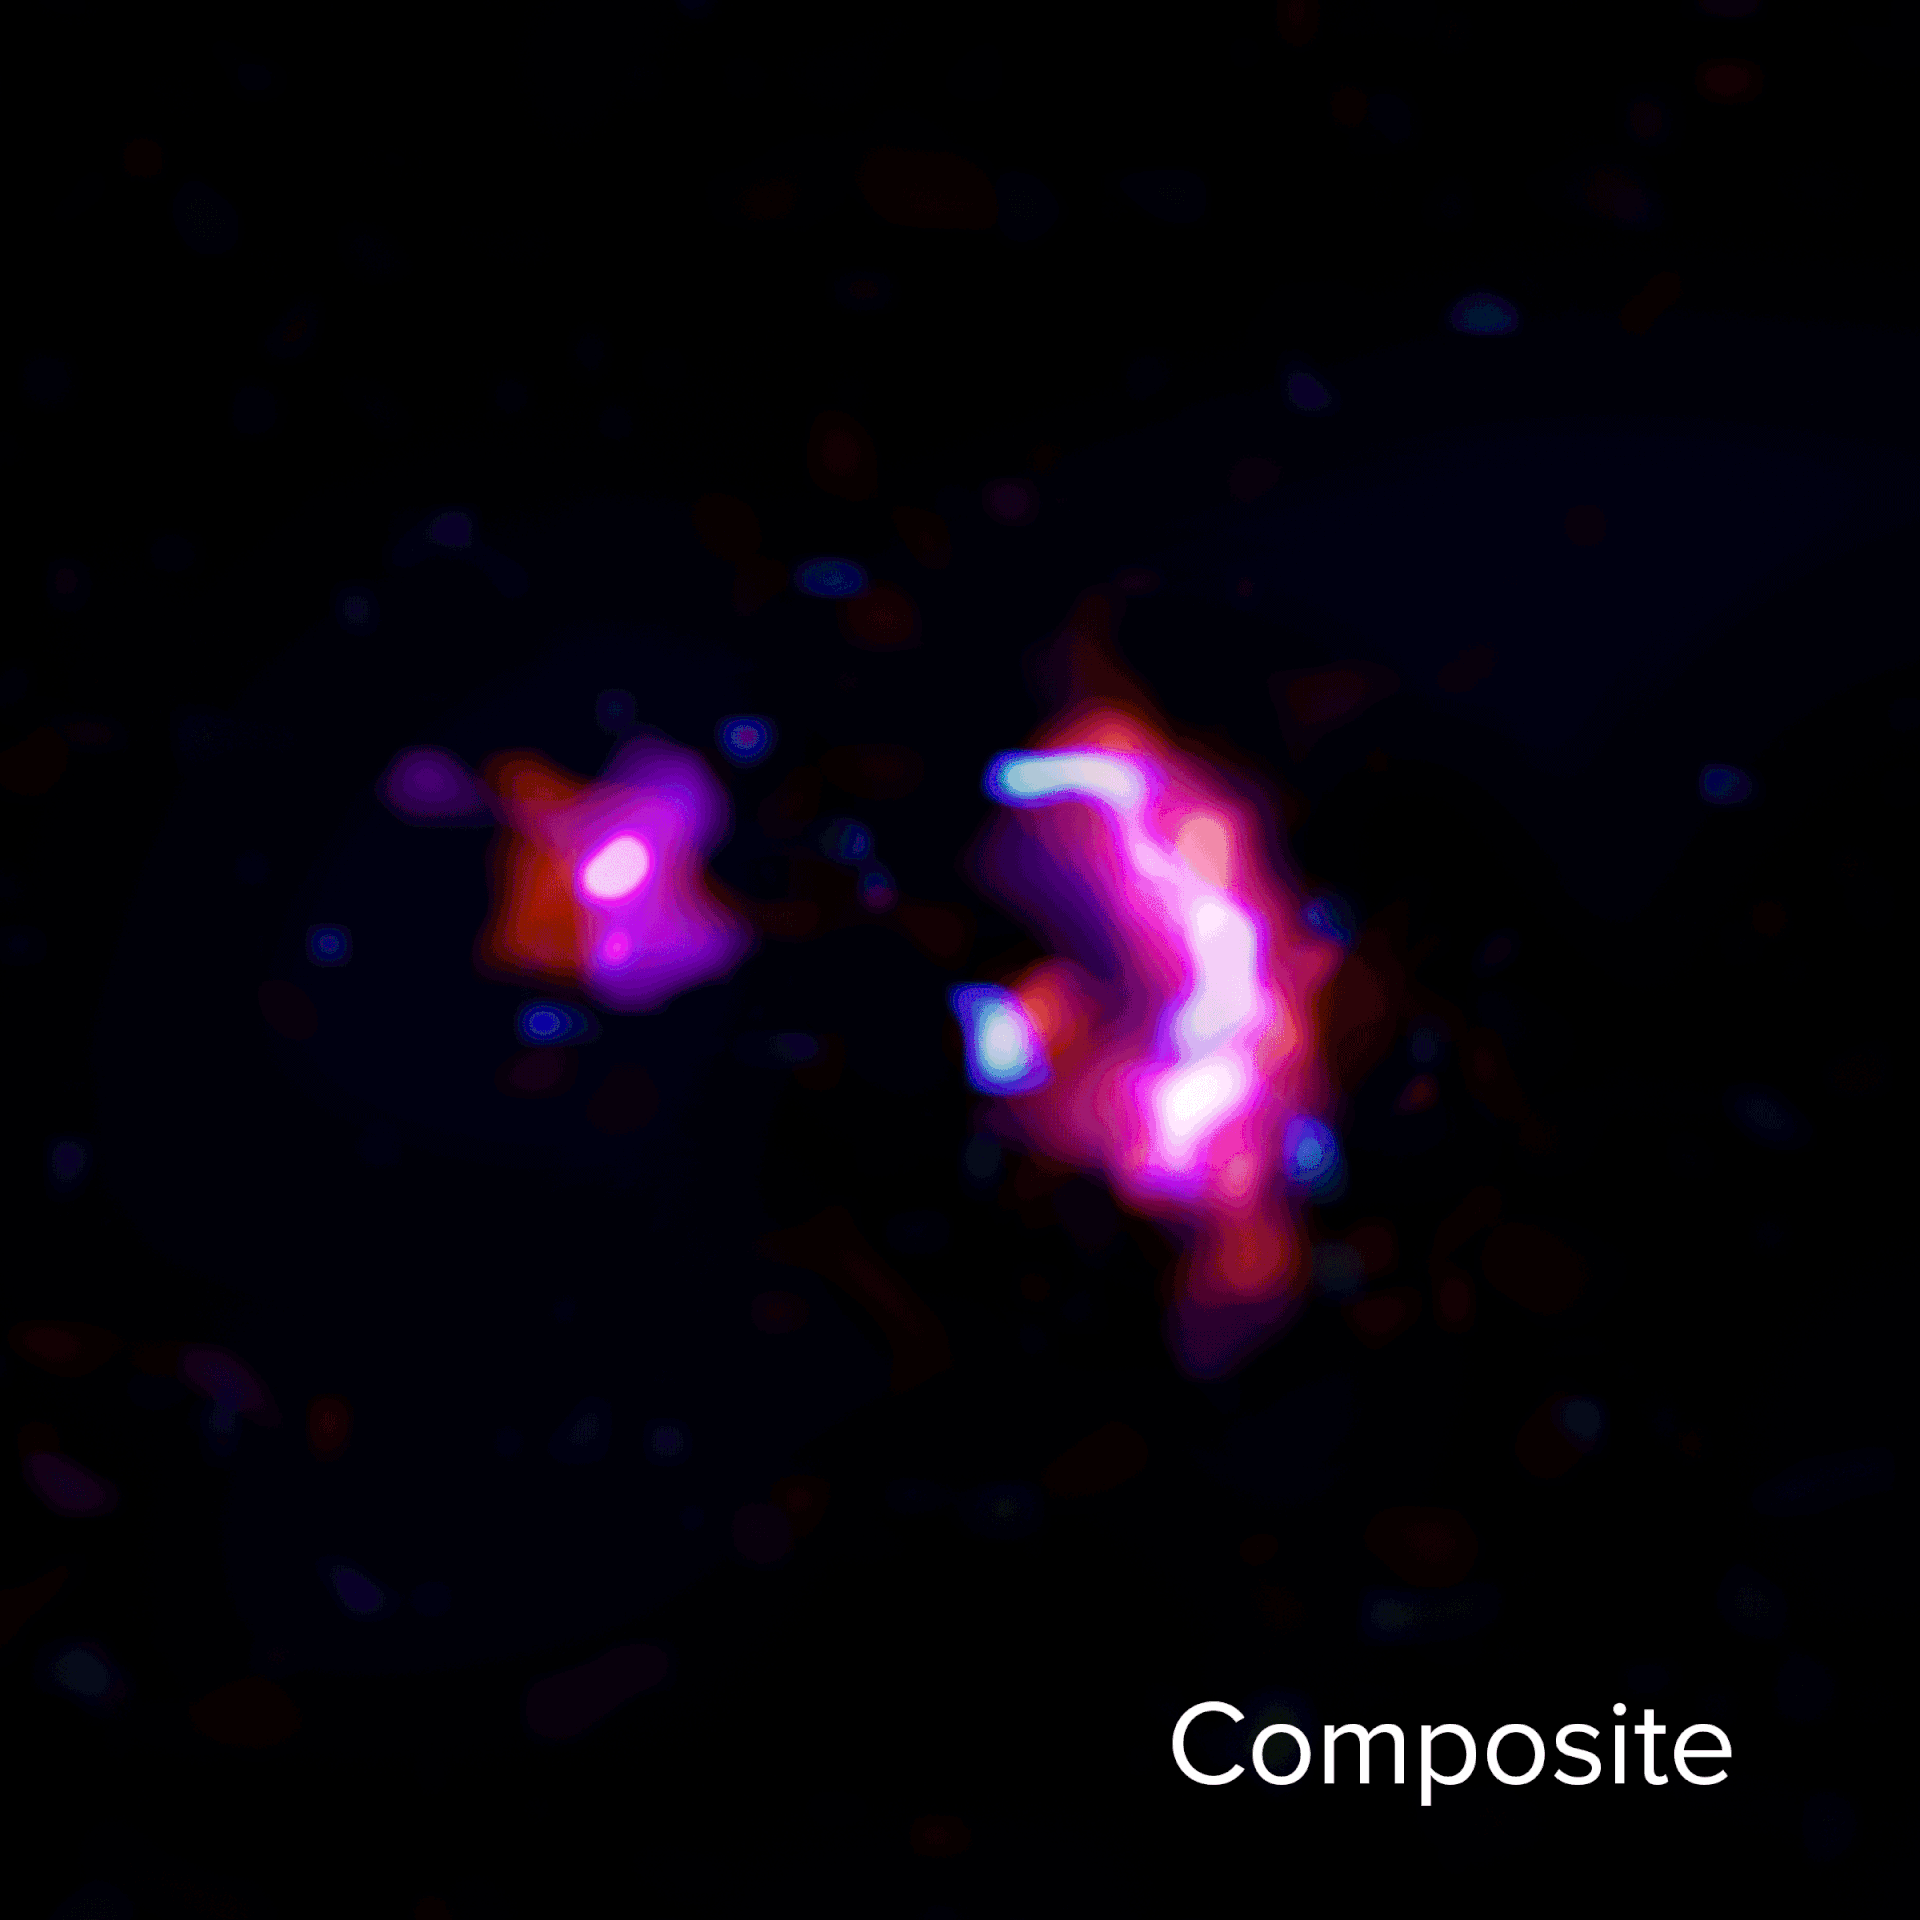 Esta imagen animada muestra el continuo de polvo y las líneas moleculares observadas por ALMA en la pareja de jóvenes galaxias masivas conocida como SPT0311-58. La animación empieza con una combinación del continuo de polvo y las líneas moleculares de H2O y CO. A continuación, se aprecia el continuo de polvo representado en rojo, las líneas moleculares de H2O en azul, las líneas moleculares de monóxido de carbono (10-9) en rosado y azul oscuro, las líneas moleculares de monóxido de carbono (7-6) en magenta y las líneas moleculares de monóxido de carbono (6-5) en morado. Créditos: ALMA (ESO/NAOJ/NRAO) /S. Dagnello (NRAO)